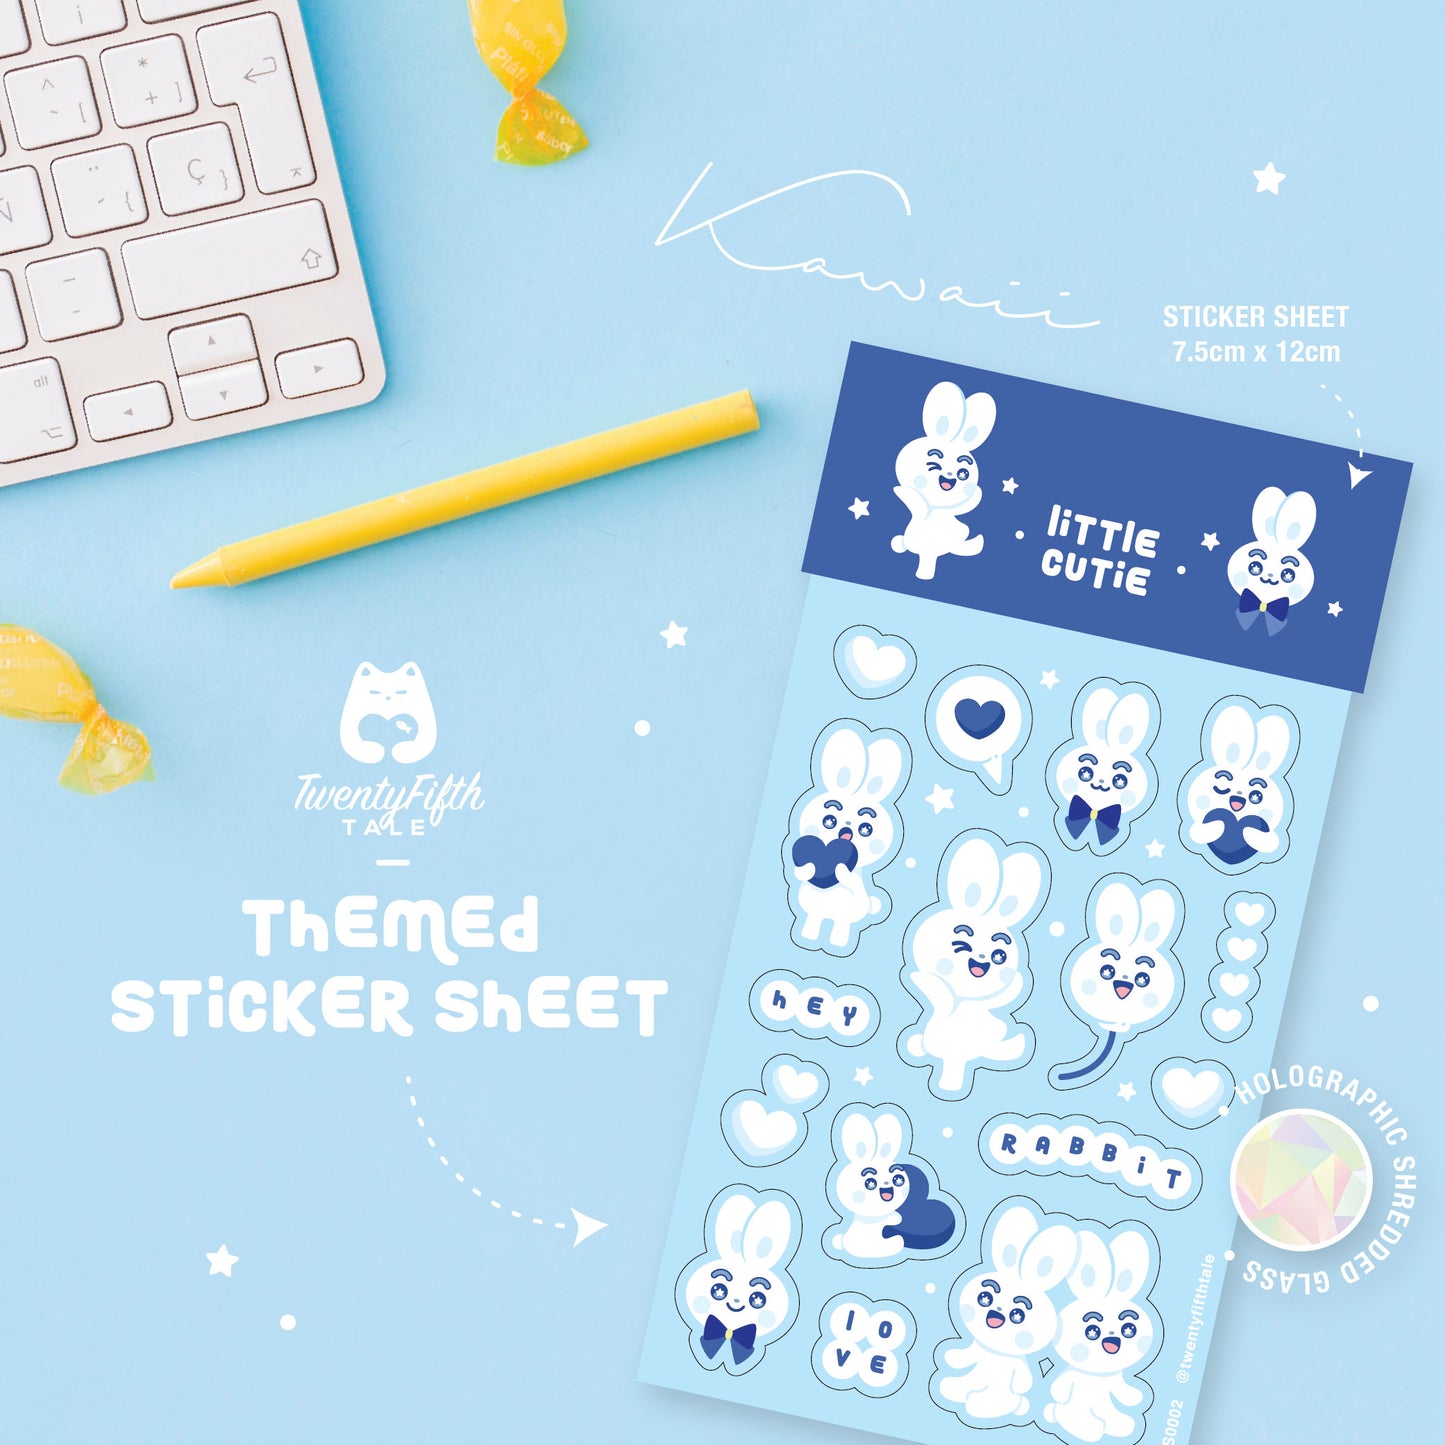 Themed Sticker Sheet | Little Cutie